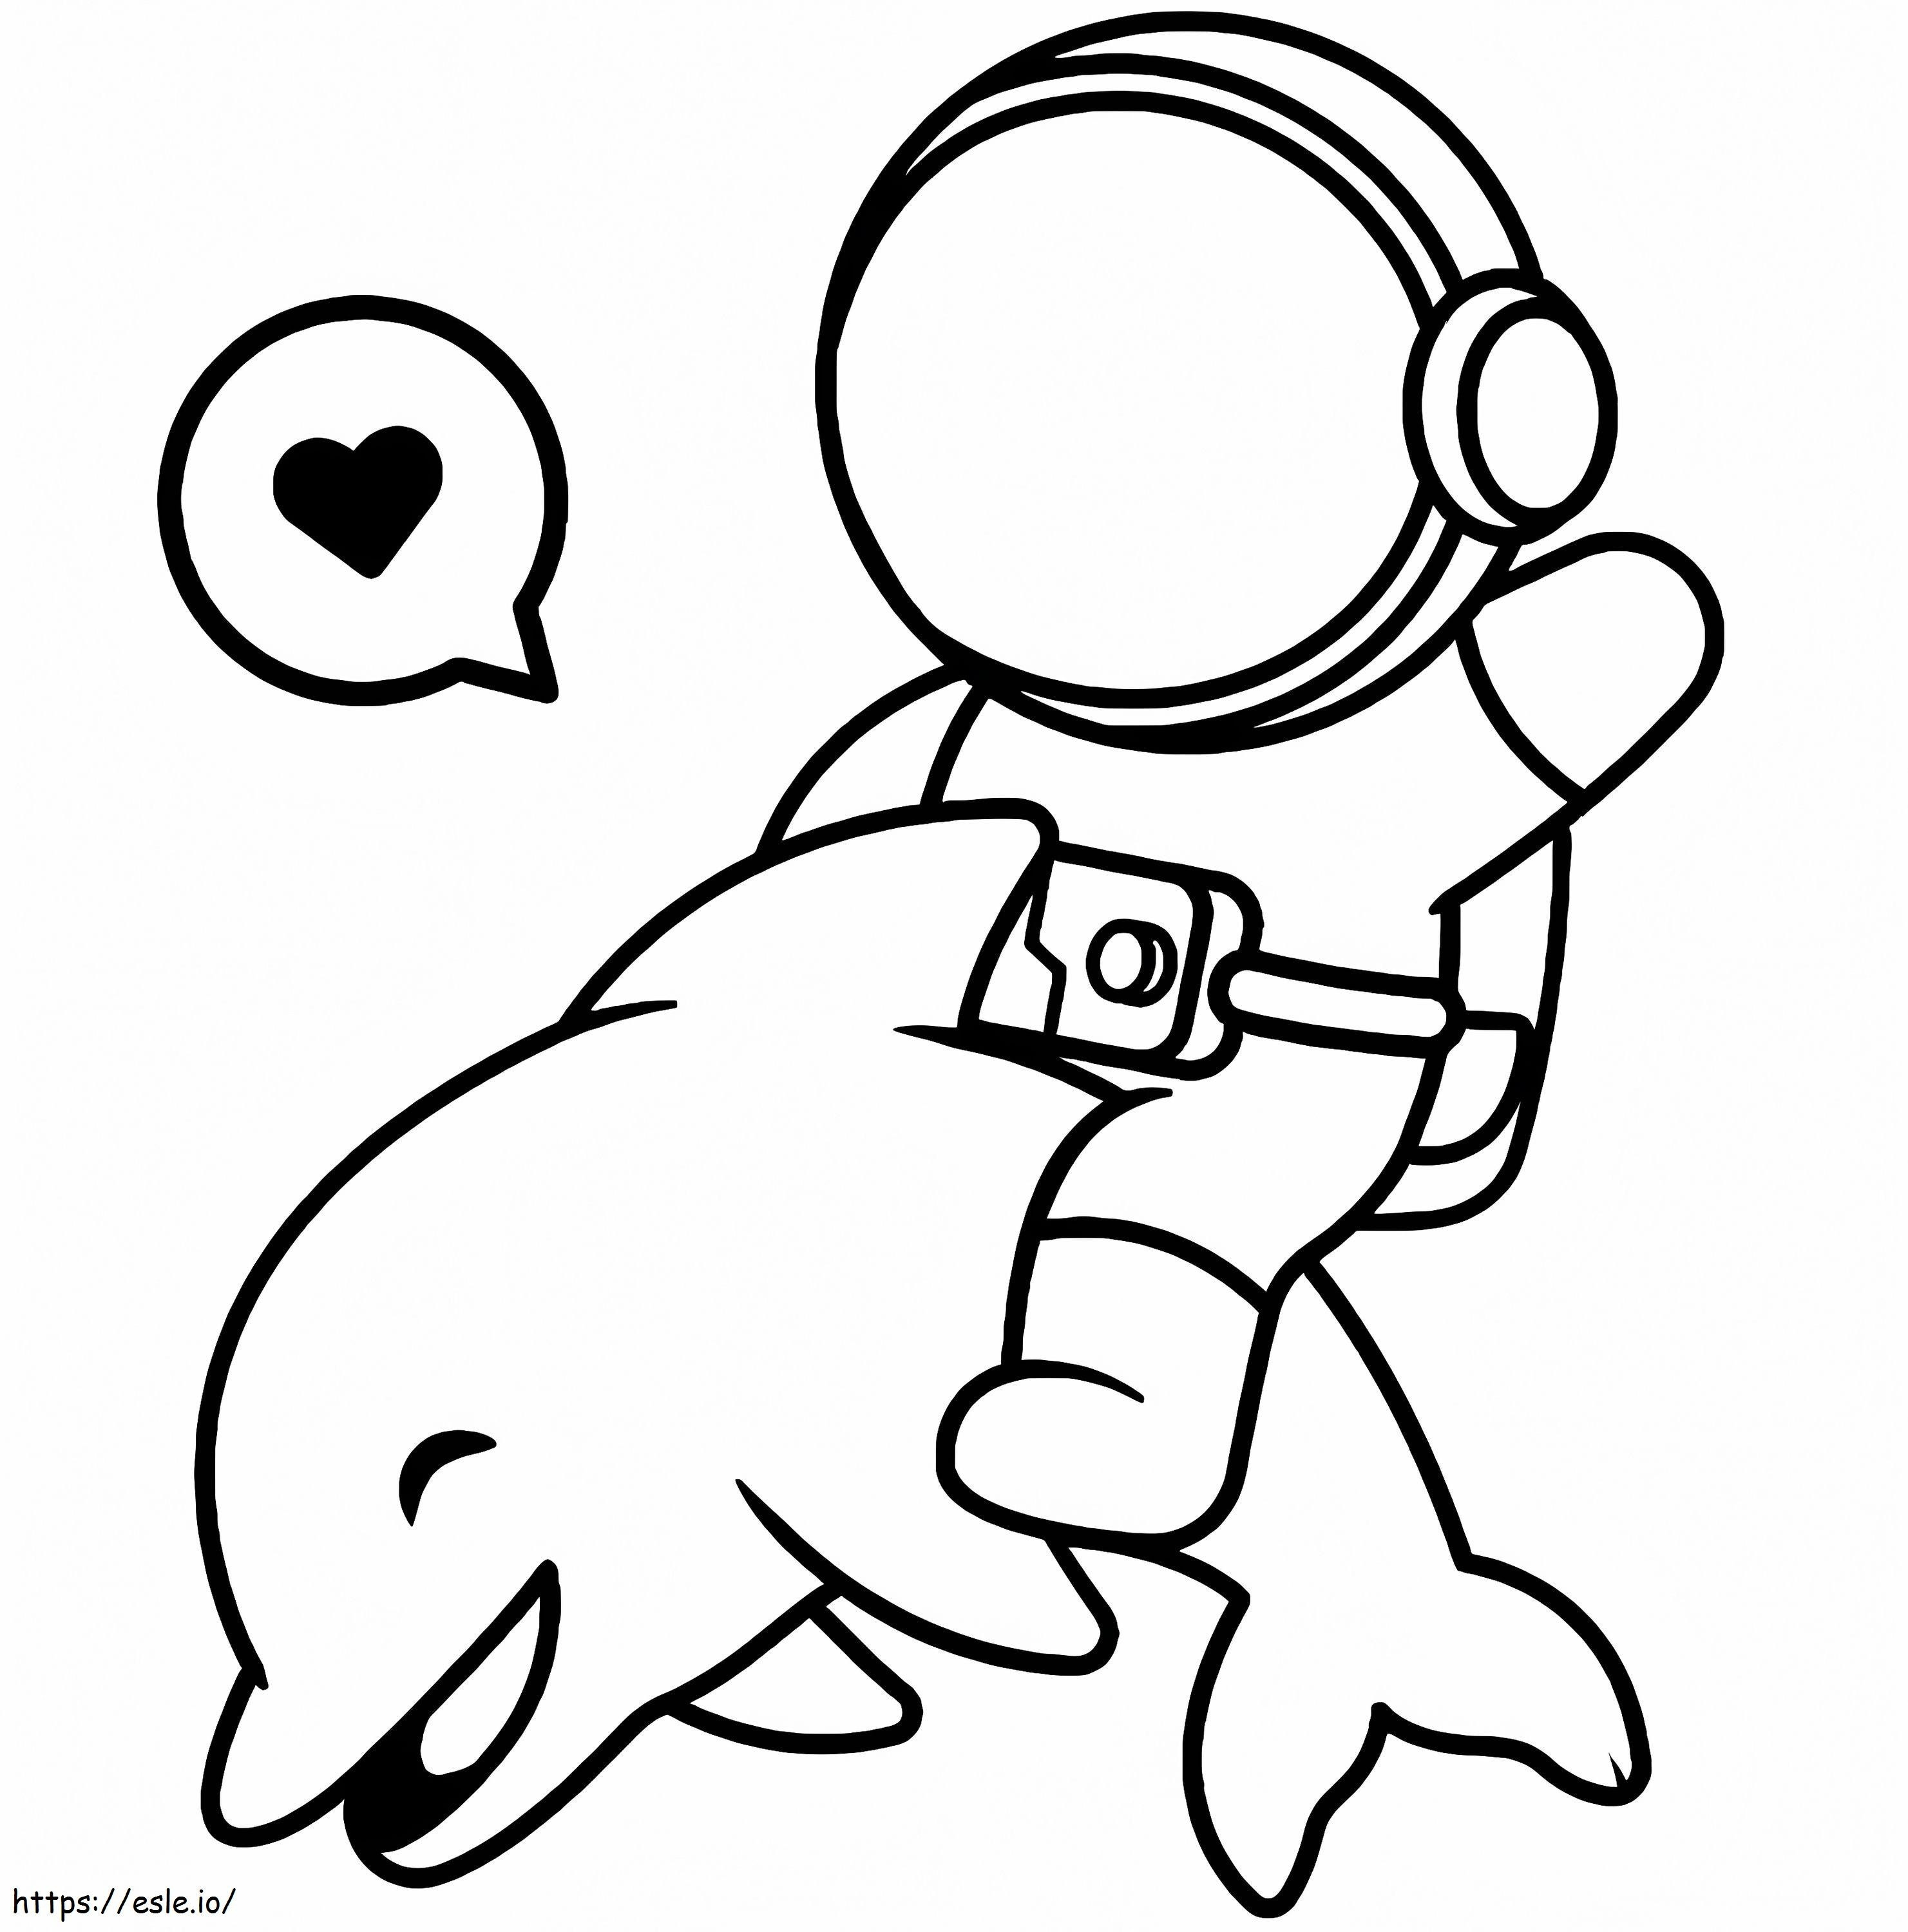 Delfin Z Astronautą kolorowanka